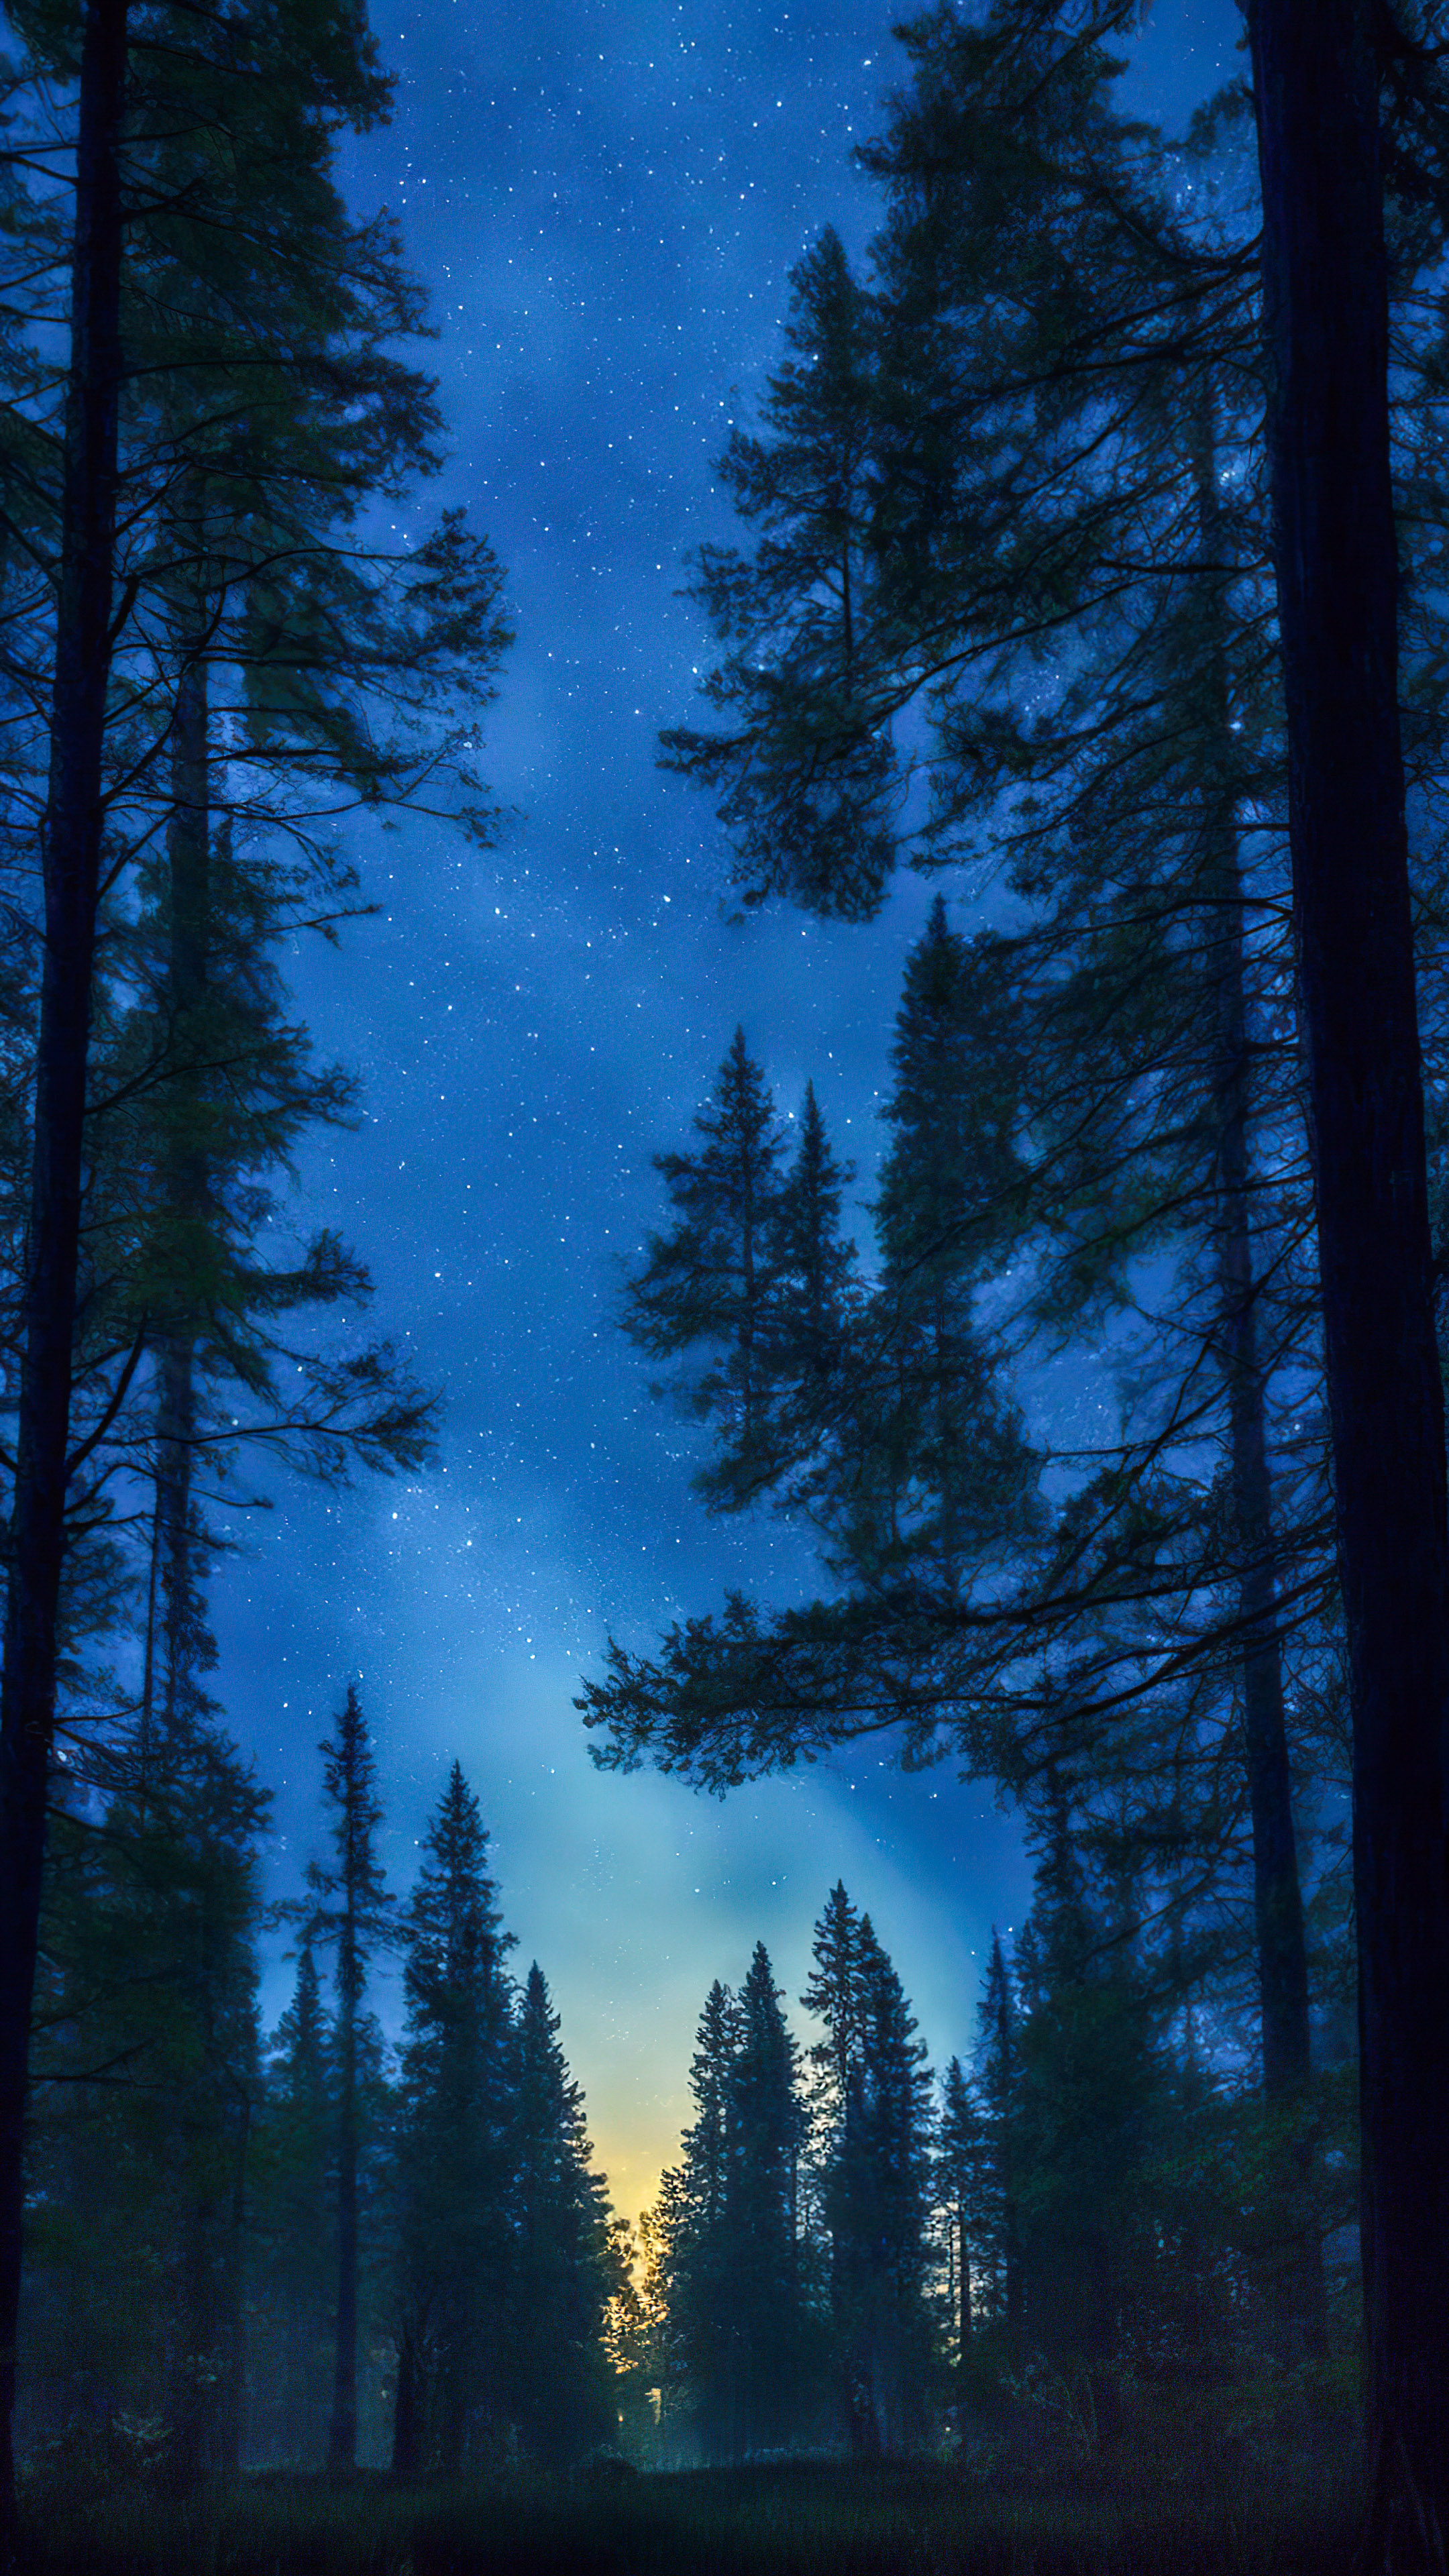 Perdez-vous dans la tranquillité de la nuit, avec notre arrière-plan dépeignant une forêt tranquille la nuit, avec de grands arbres anciens sous un ciel étoilé et une douce lueur au clair de lune.